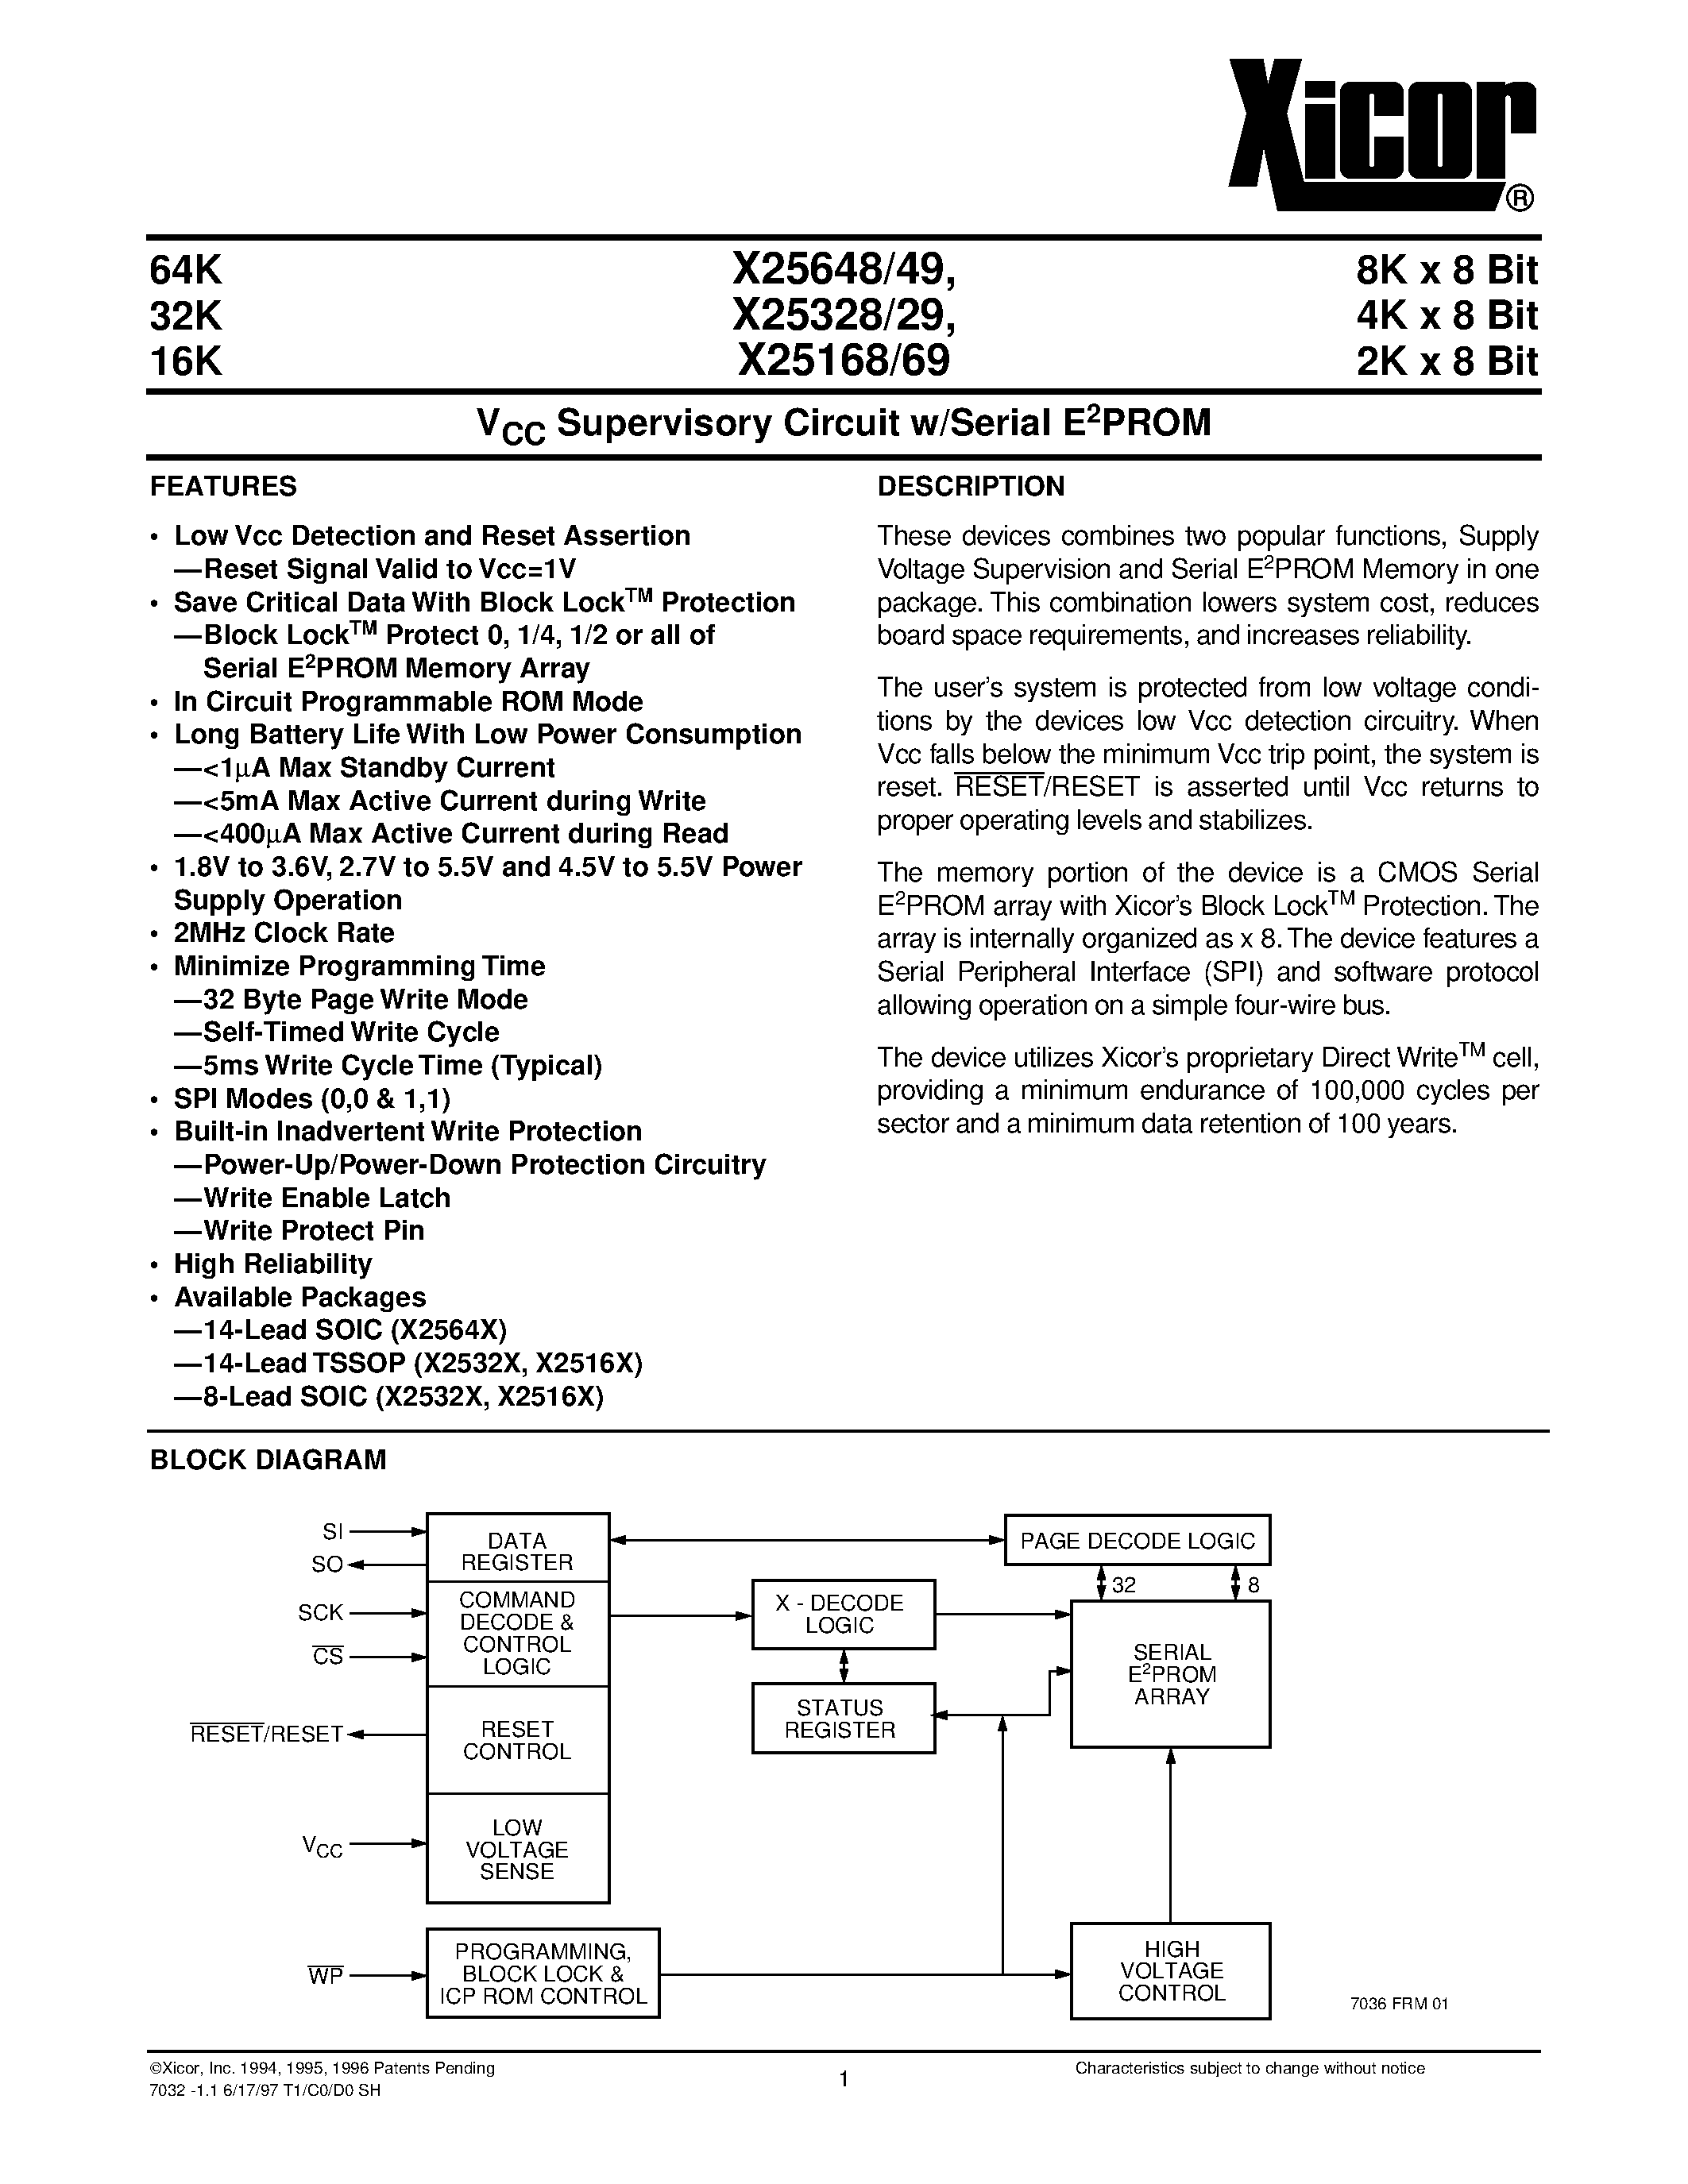 Даташит X25329 - V CC Supervisory Circuit w/Serial E 2 PROM страница 1